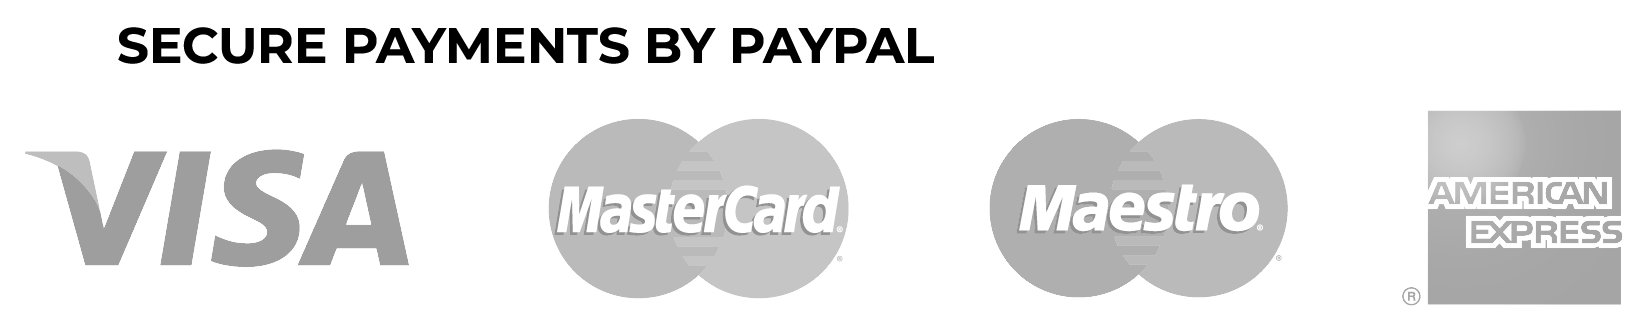 card payment logos gray